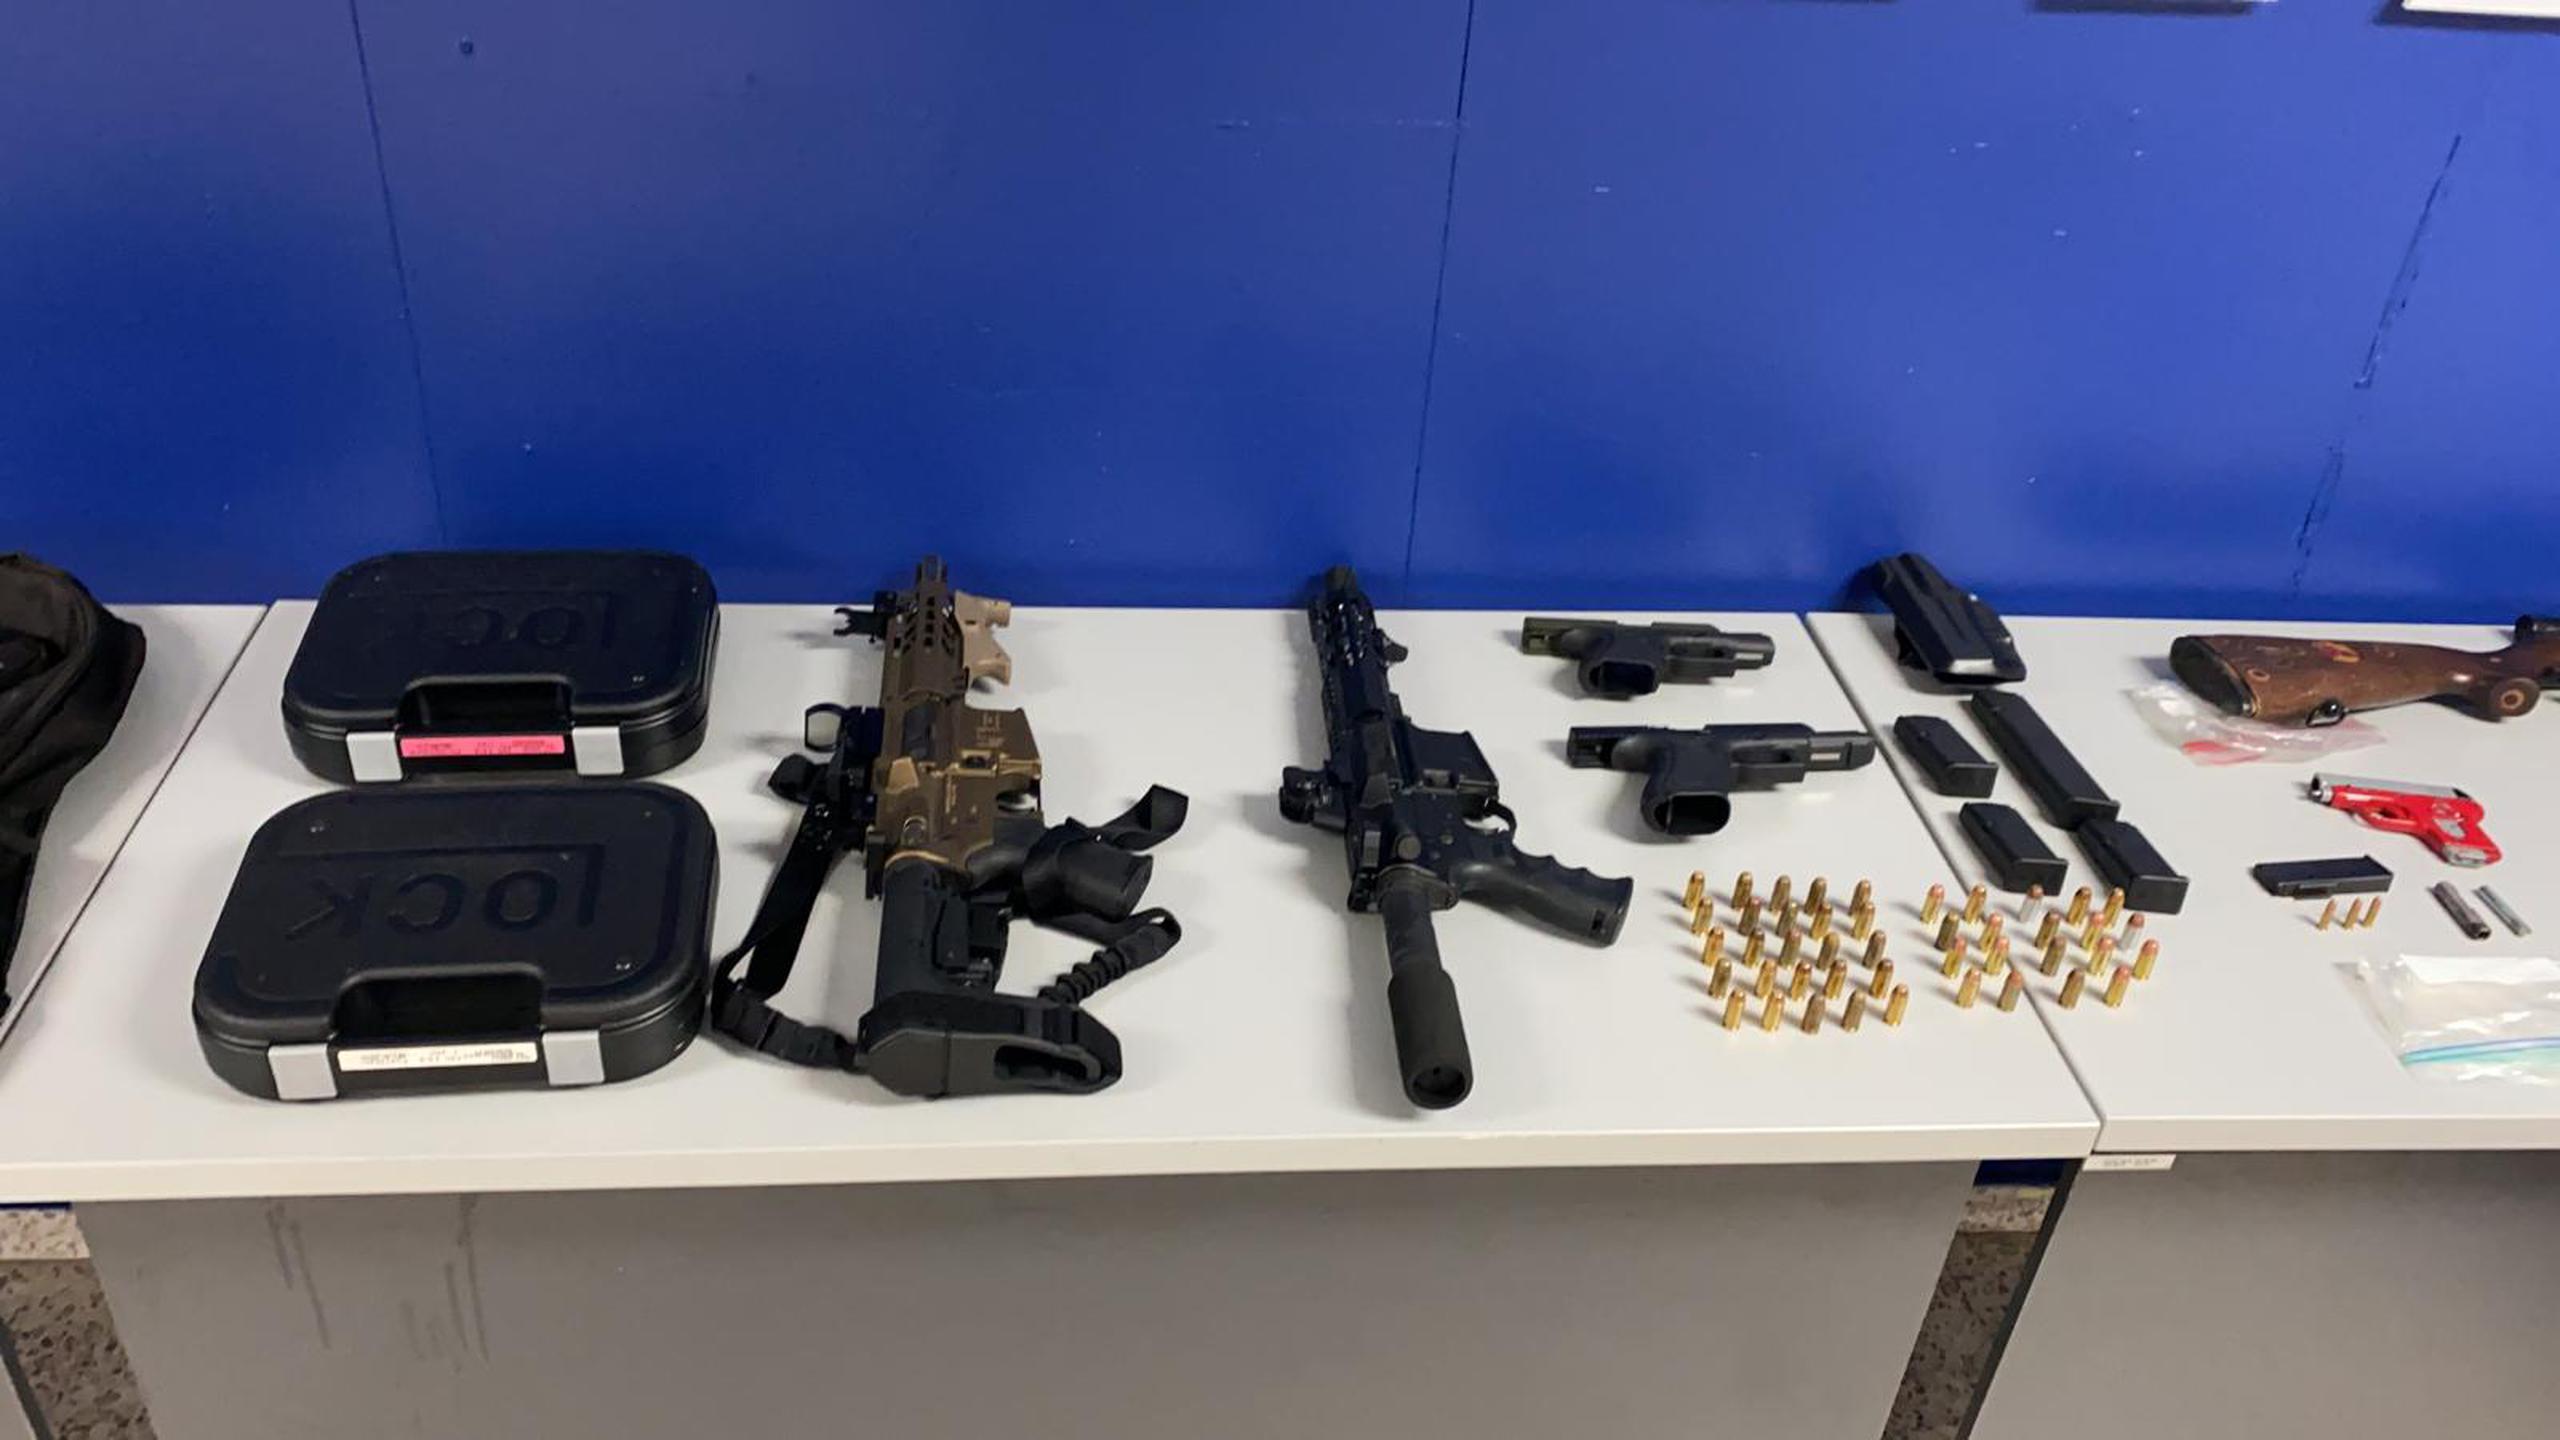 El Negociado de Drogas arrestó 13 personas y ocupó armas, balas, cargadores y sustancias controladas, mientras diligenciaban órdenes de allanamiento en zonas de alta incidencia criminal en Santurce y Cataño.